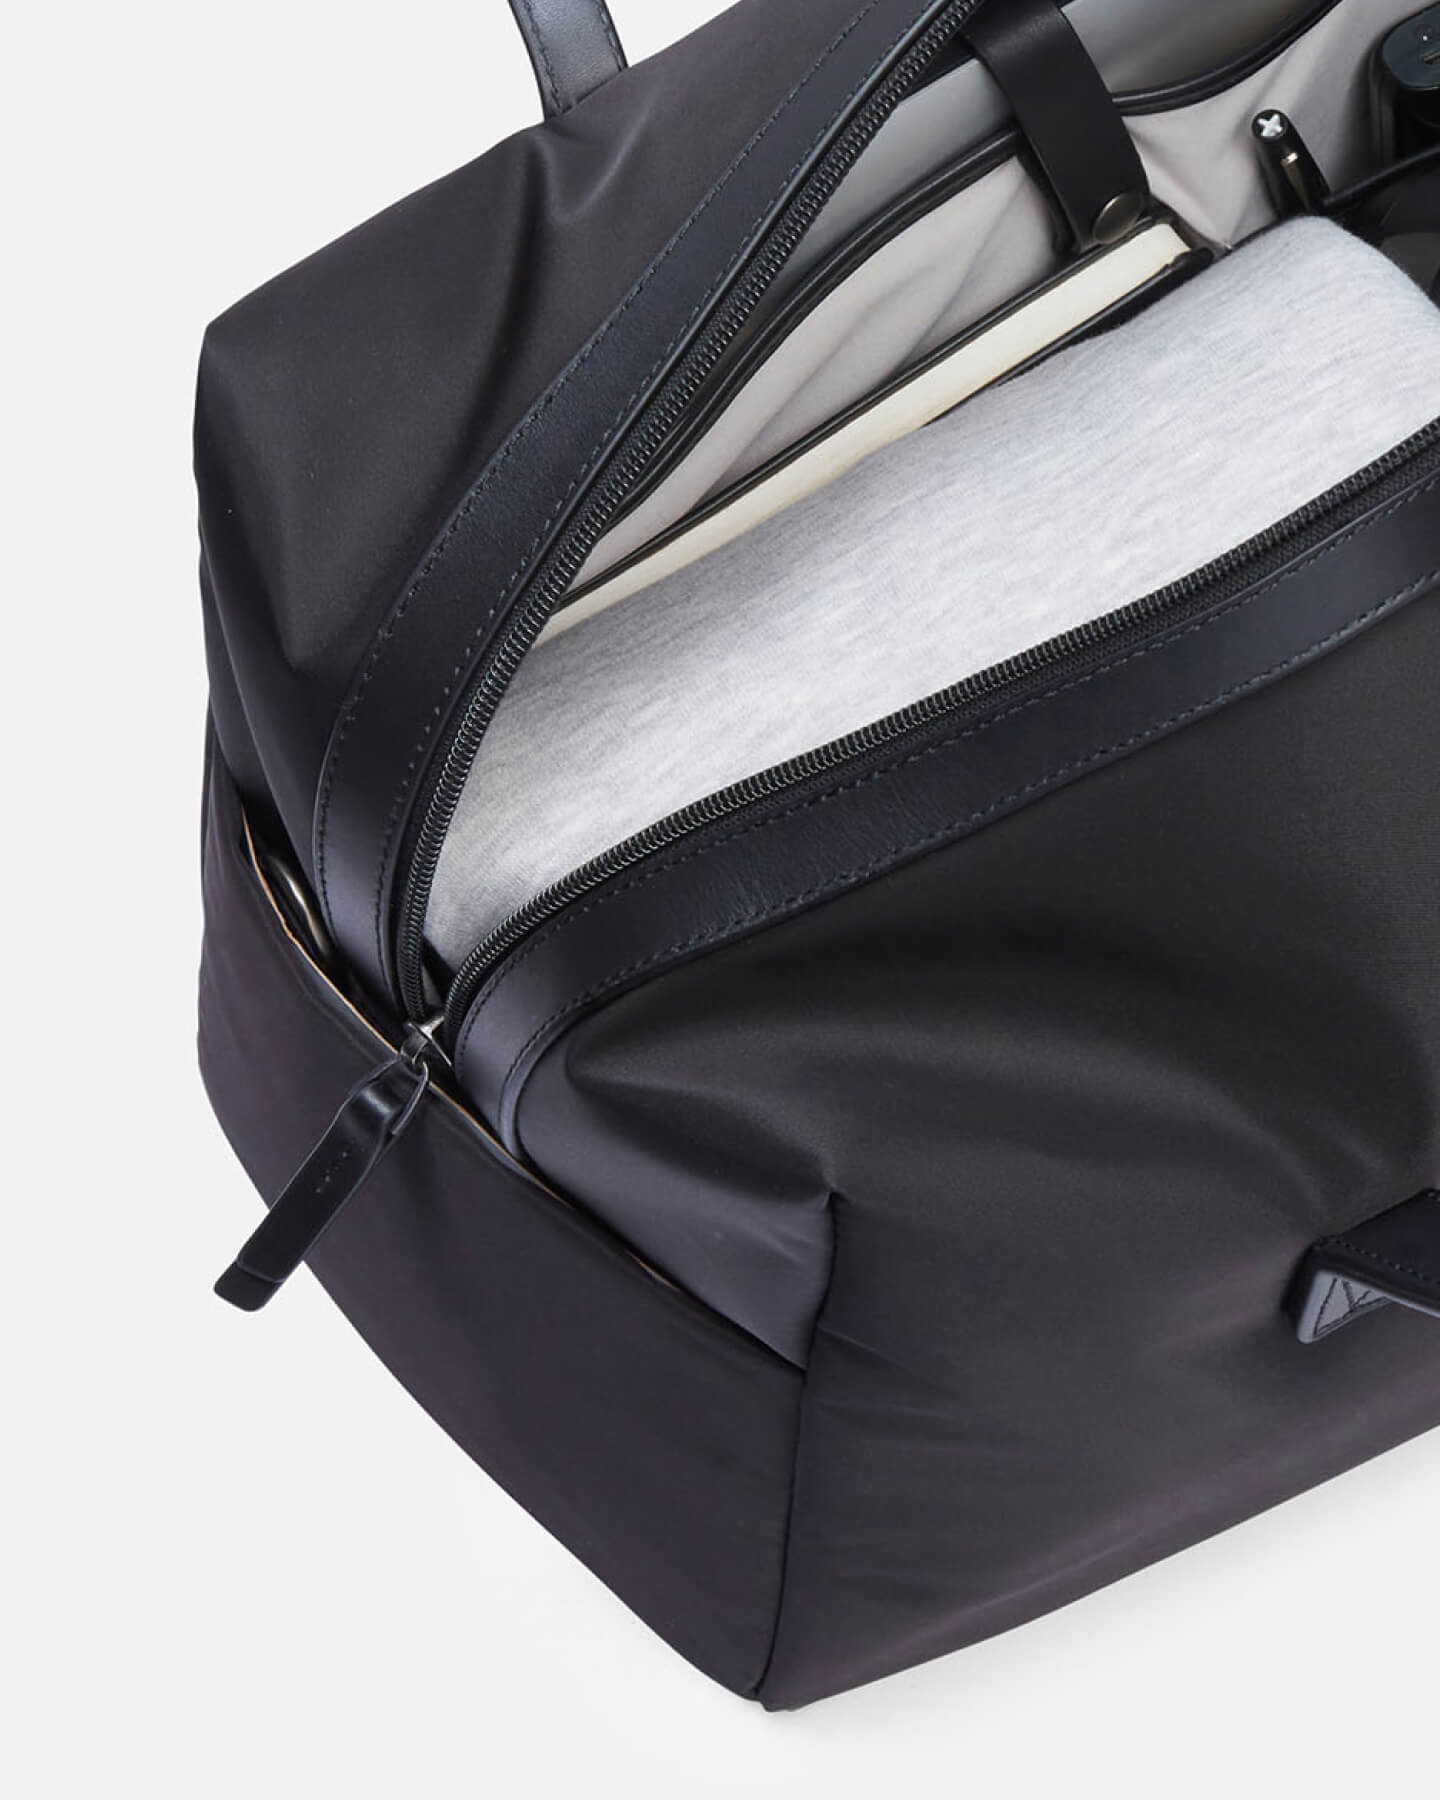 Chelsea Houska Designed a New Diaper Bag, and We Kinda Want One